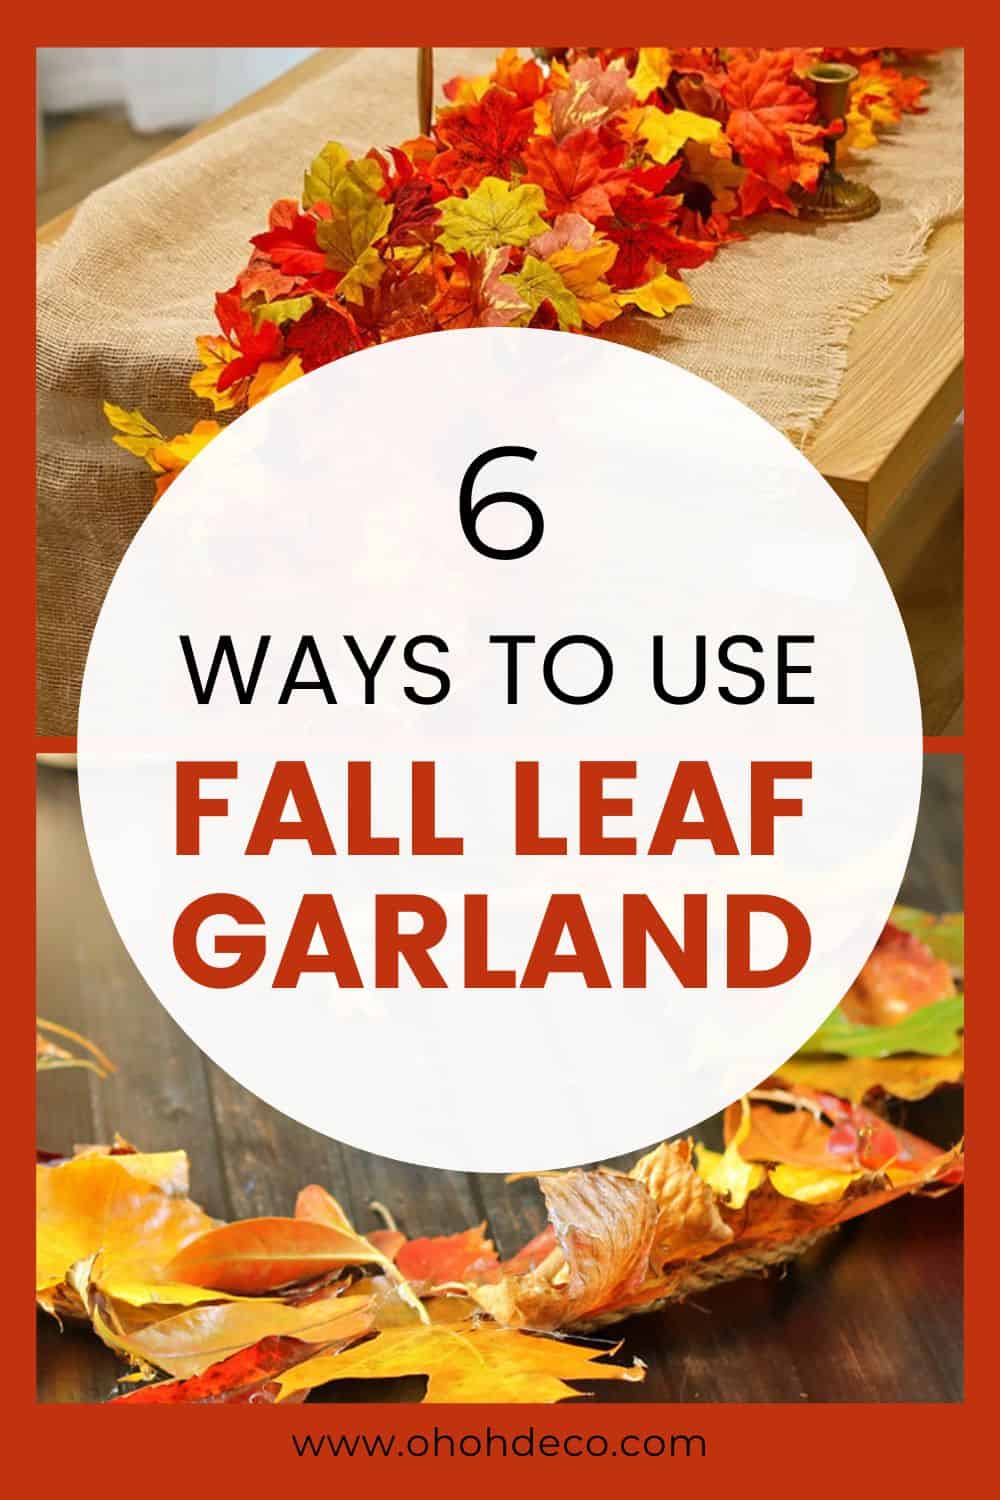 Fall leaf Garland decor ideas